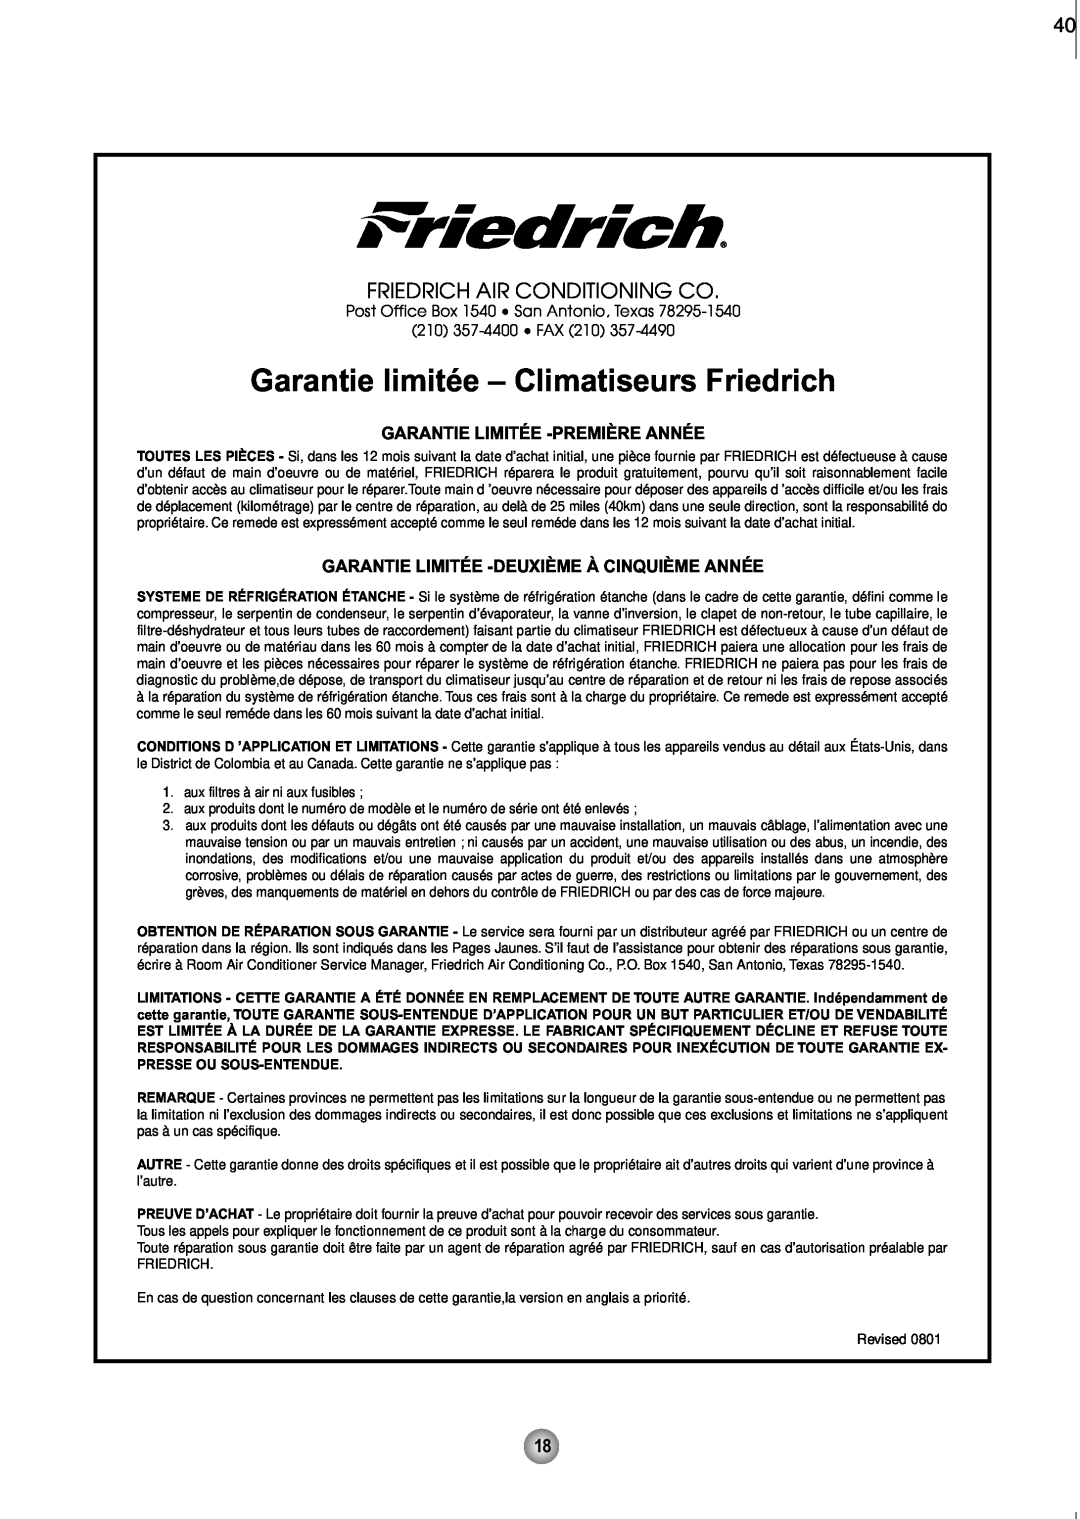 Friedrich CP08 Garantie limitée - Climatiseurs Friedrich, Friedrich Air Conditioning Co, Garantie Limitée -Premièreannée 